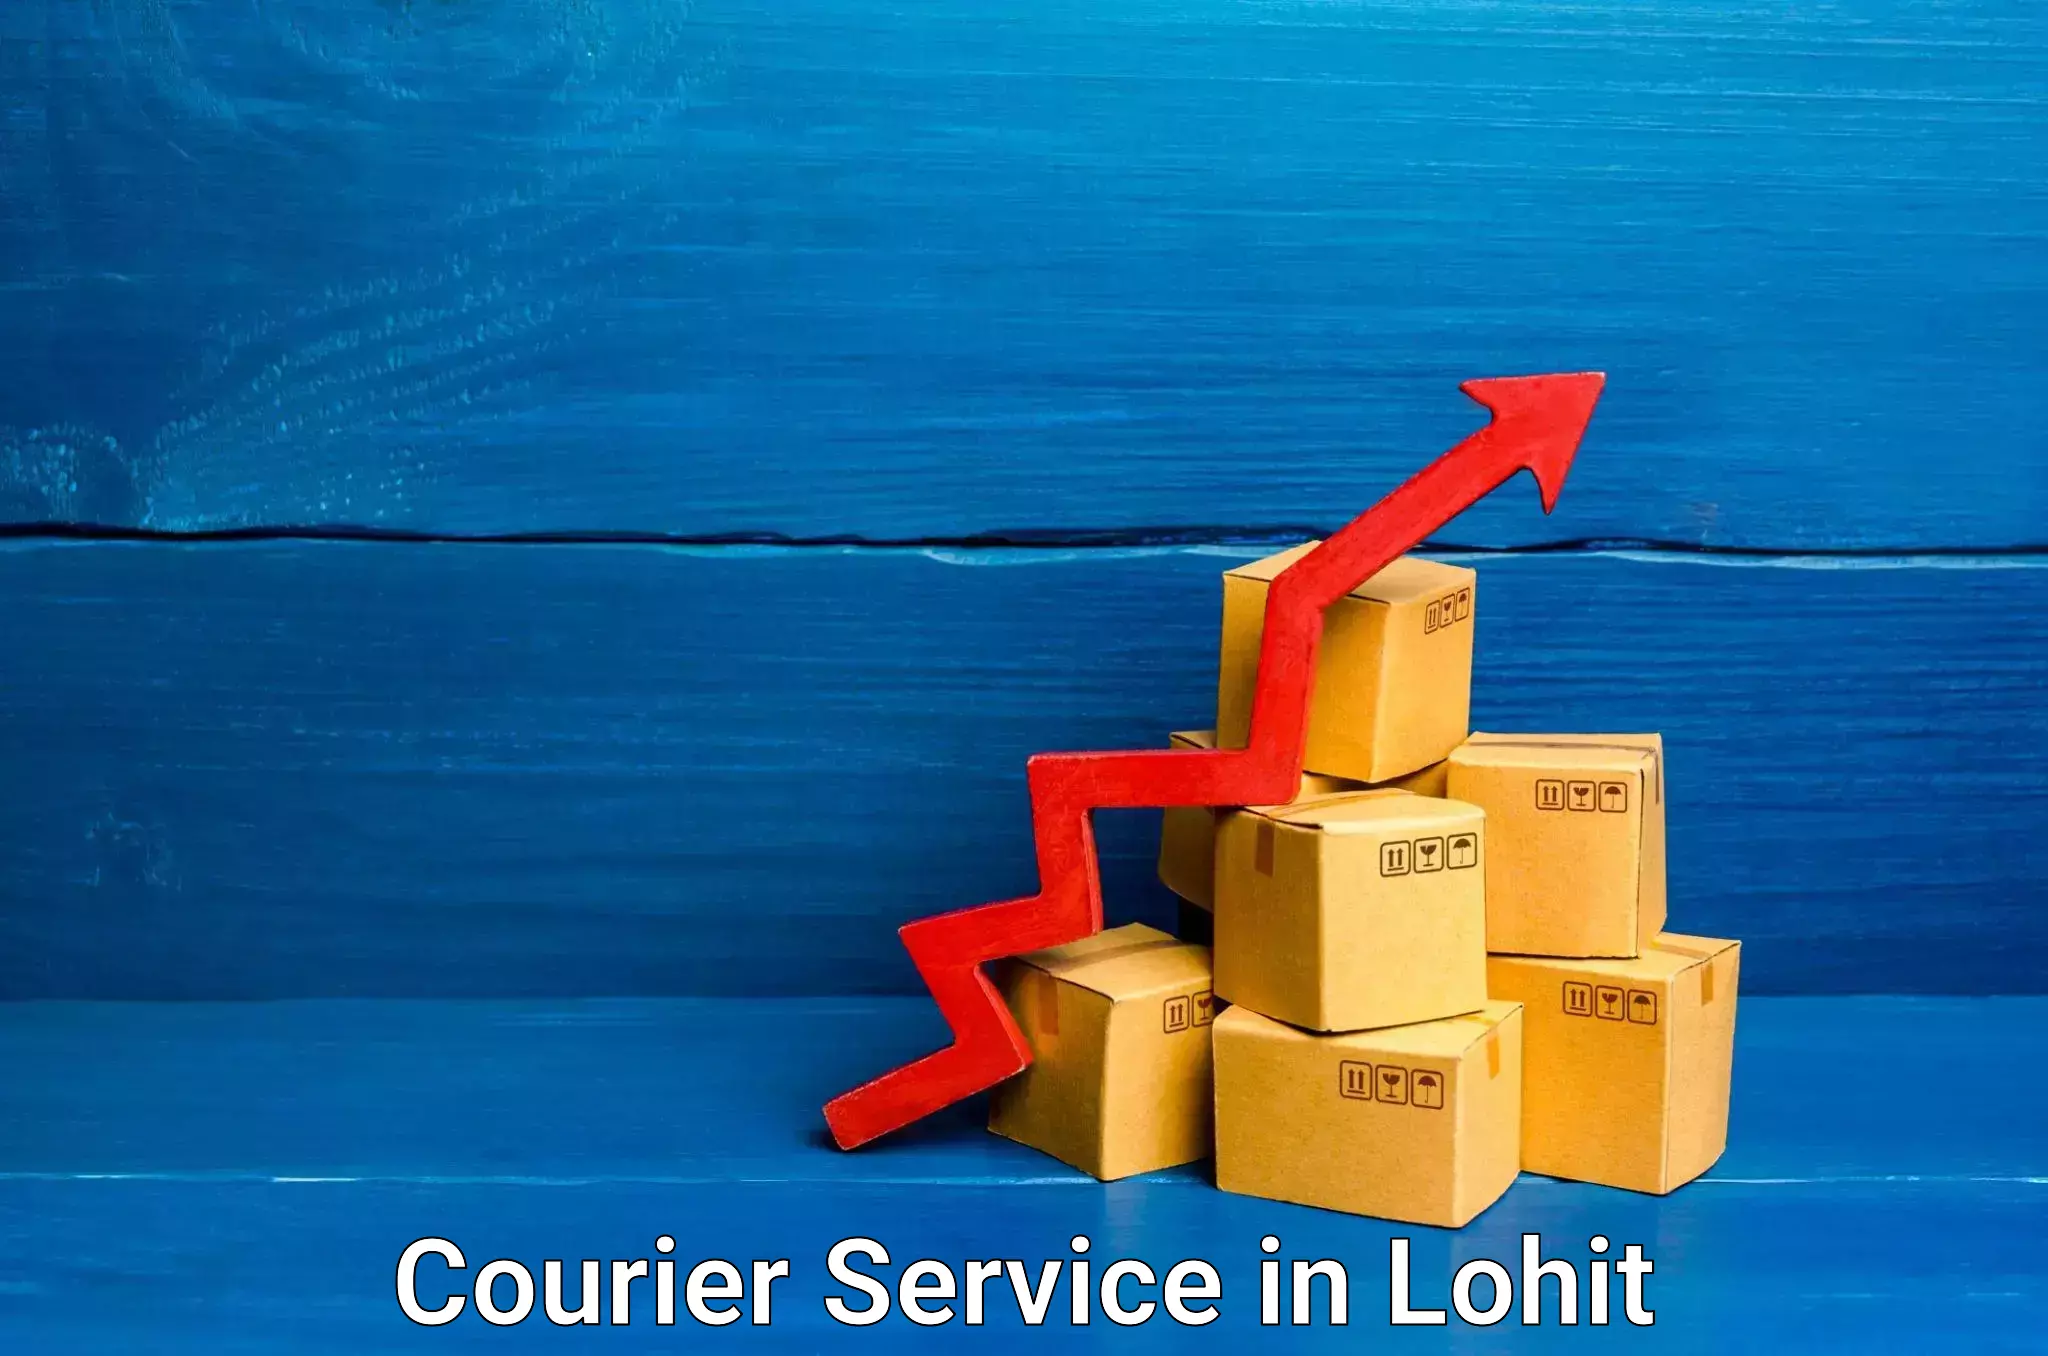 Efficient parcel service in Lohit